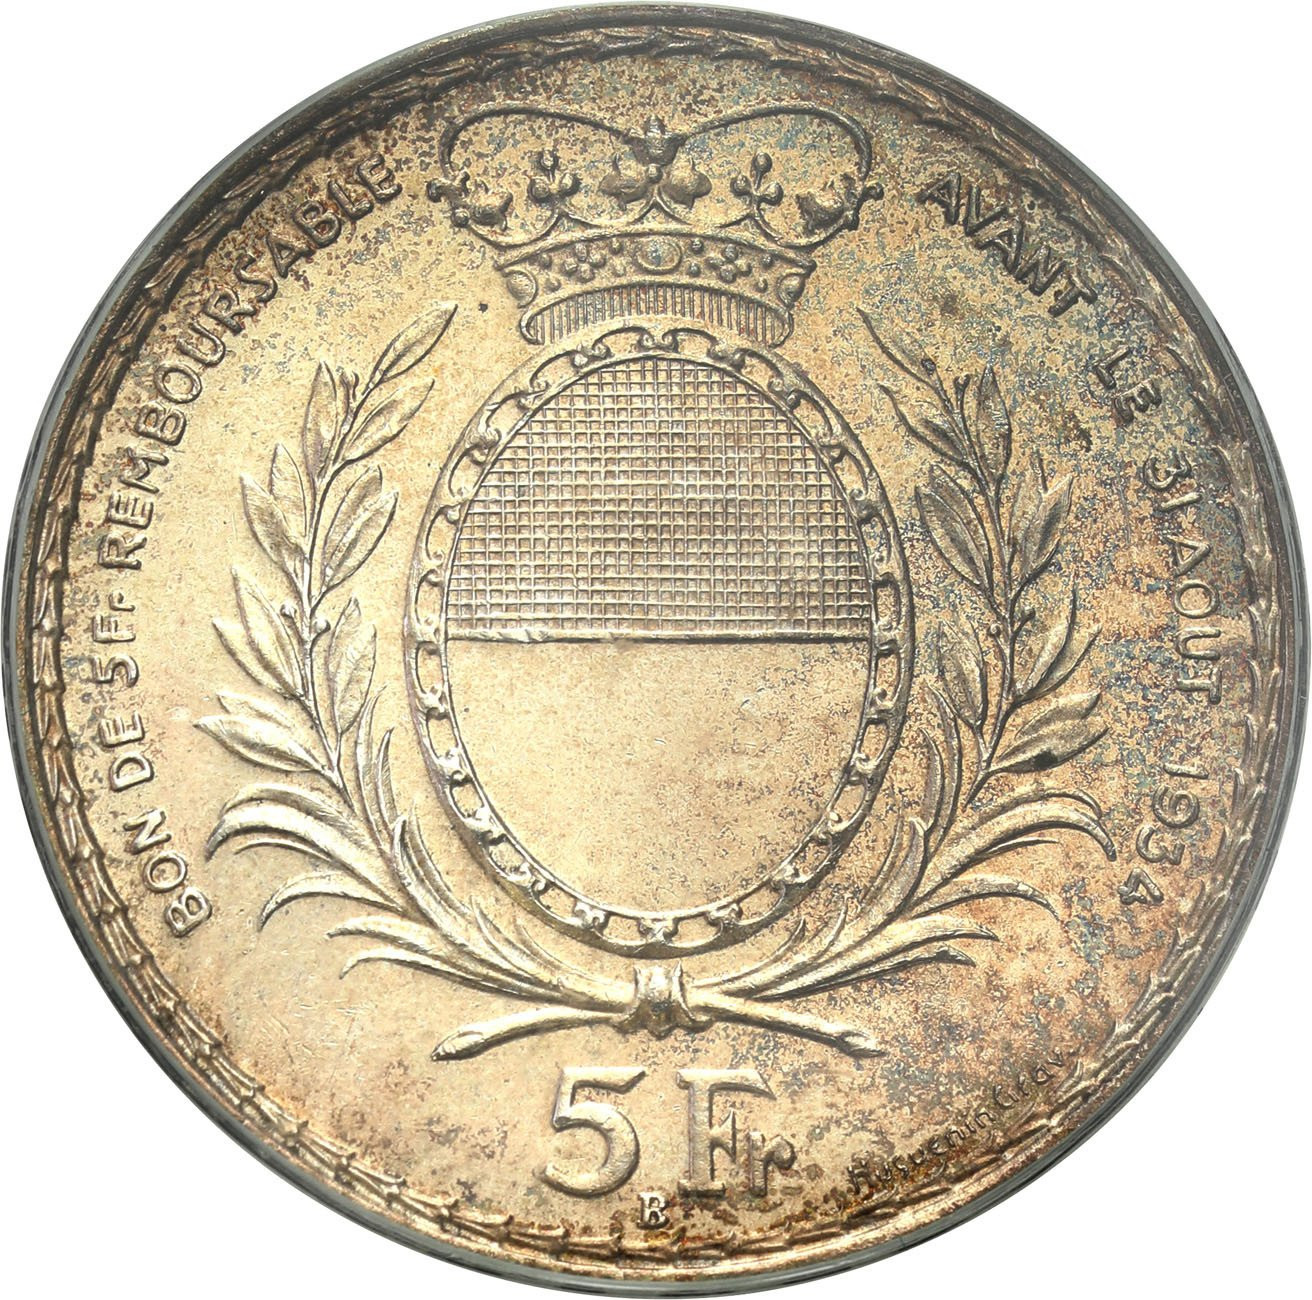 Szwajcaria. 5 franków 1934, Freiburg PCGS MS63 - PIĘKNE